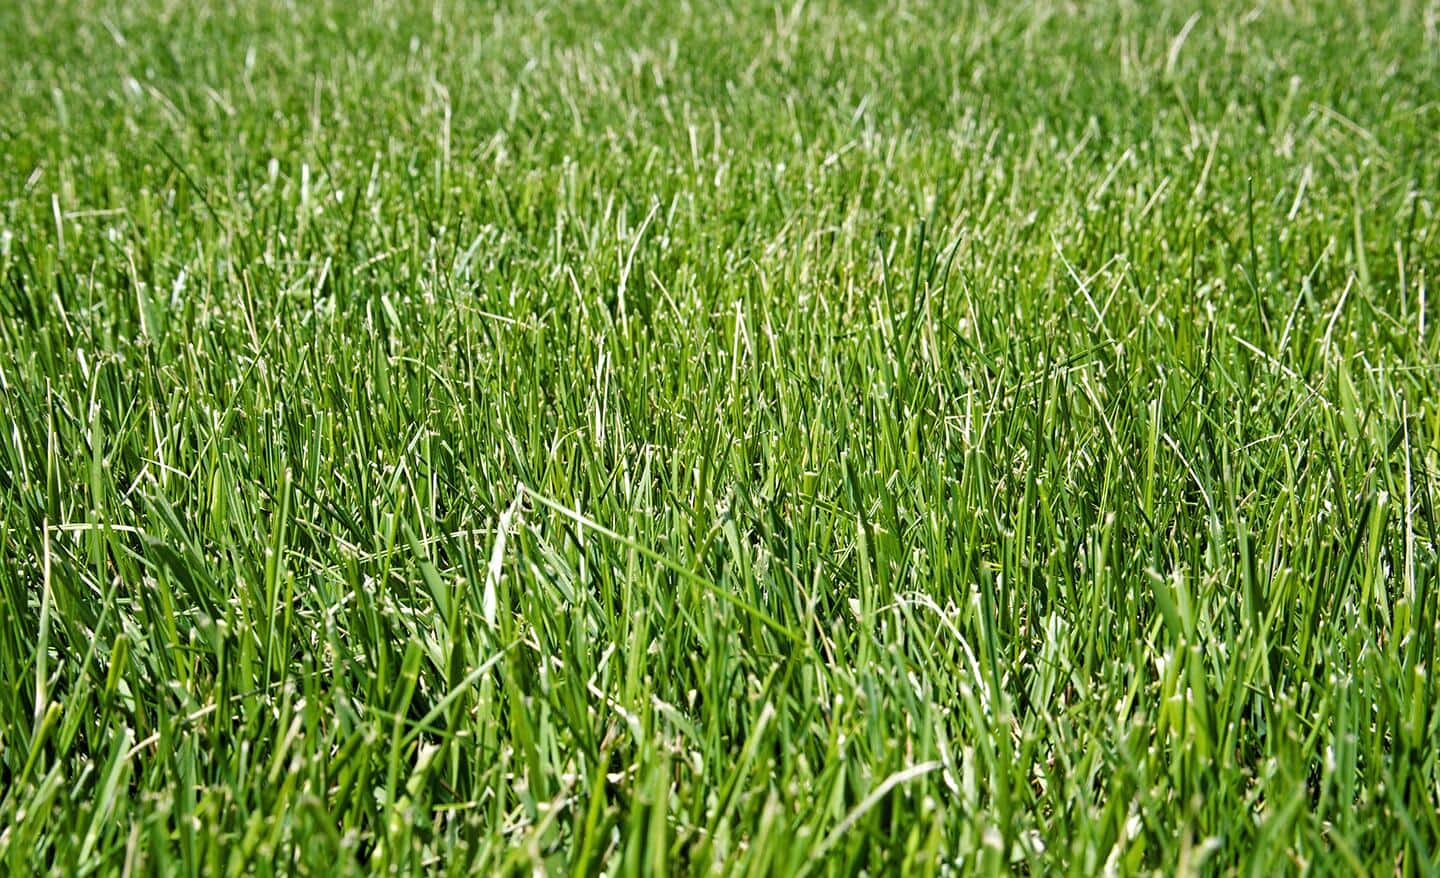 Fescue grass lawn